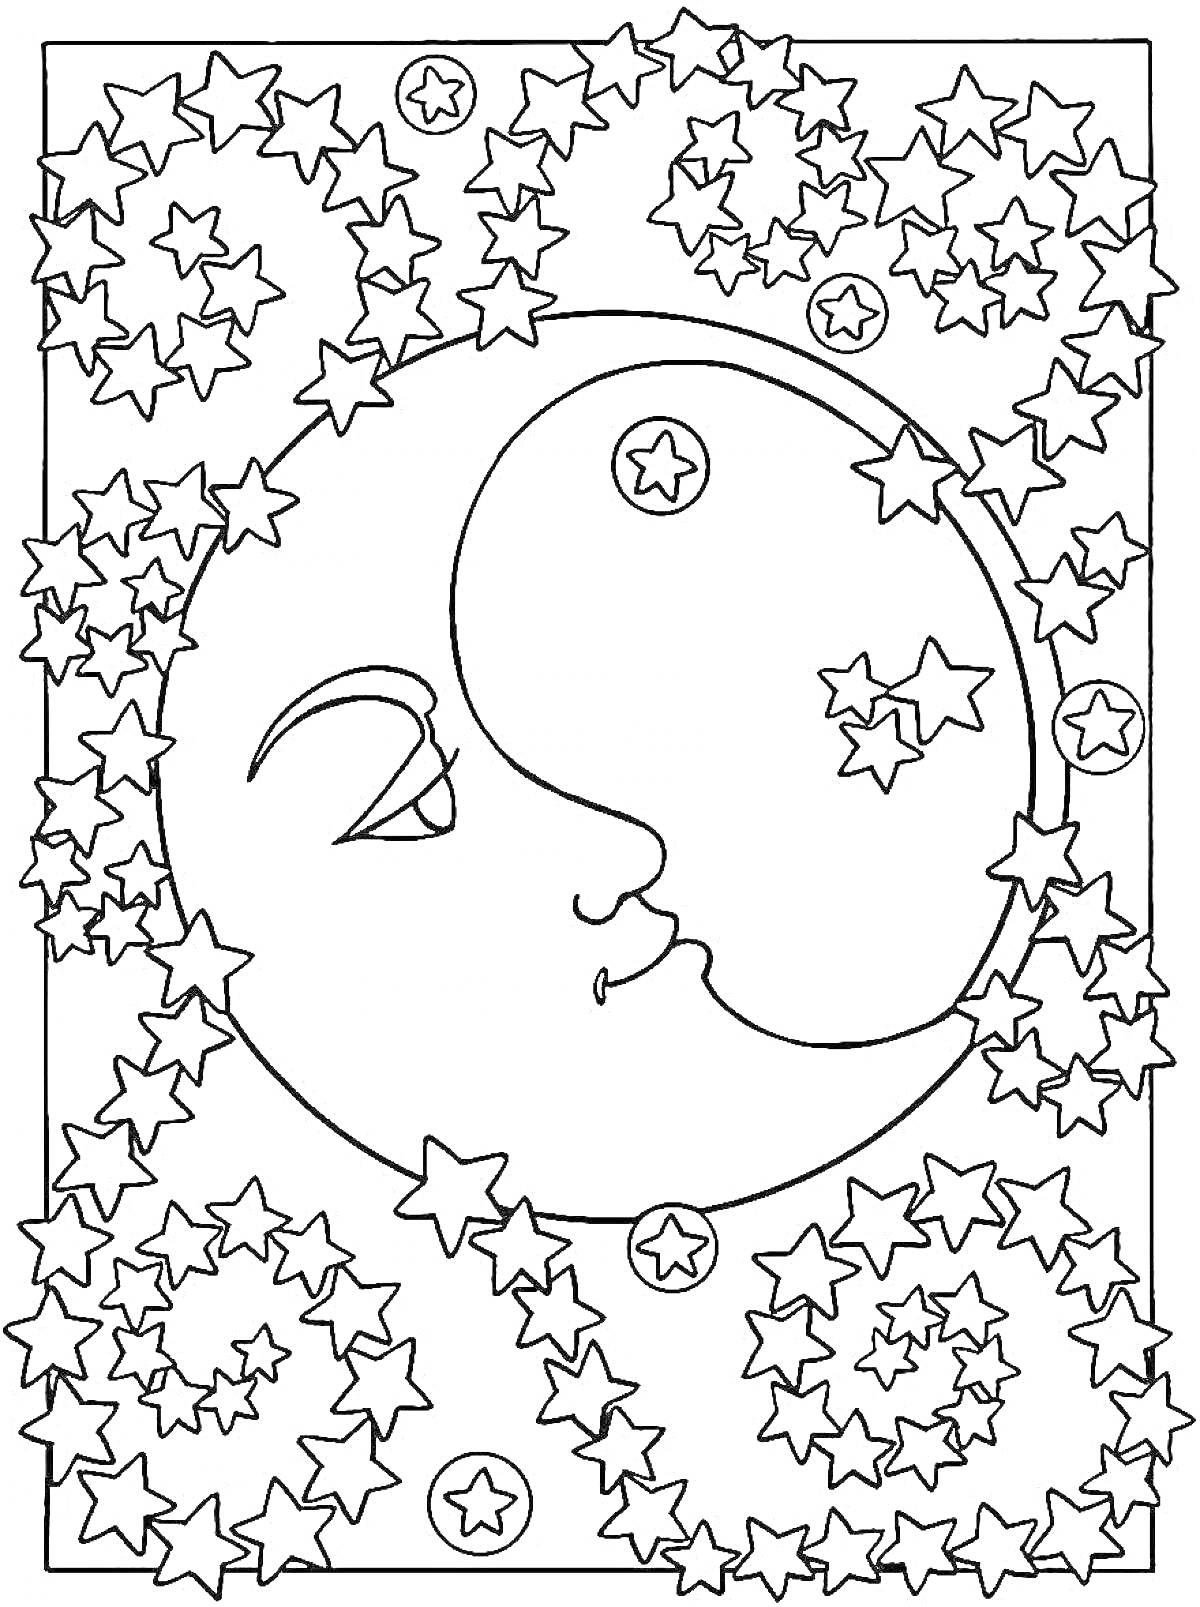 Раскраска Луна и солнце с лицами, окружённые звёздами и узорами из звёзд